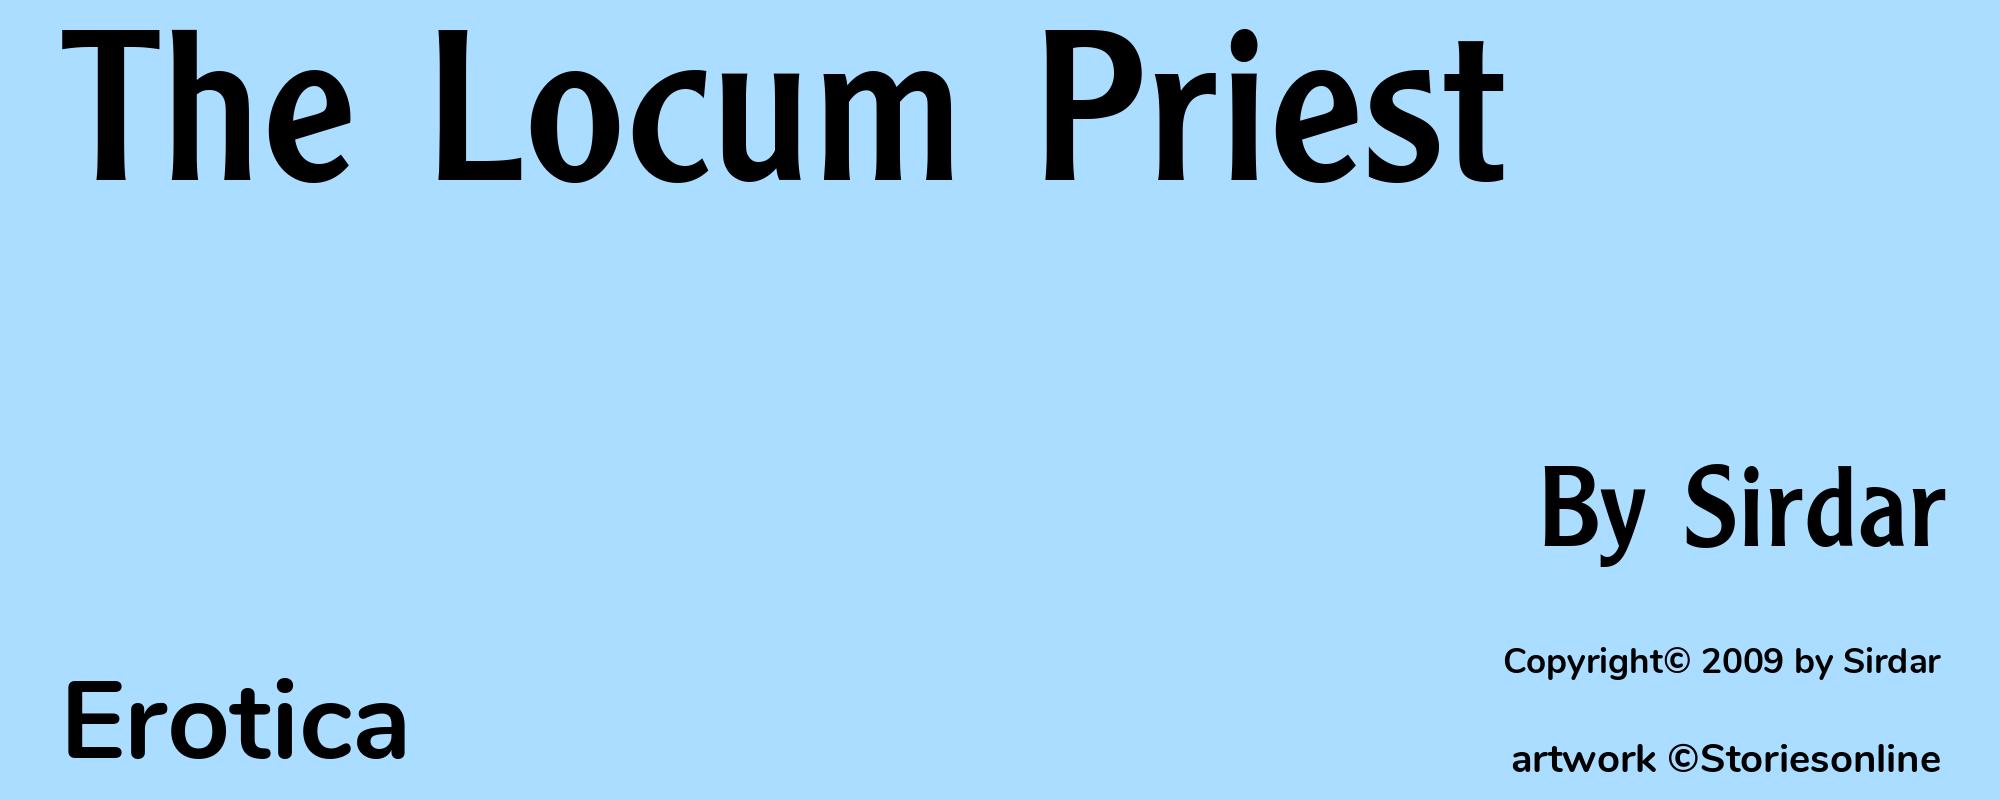 The Locum Priest - Cover